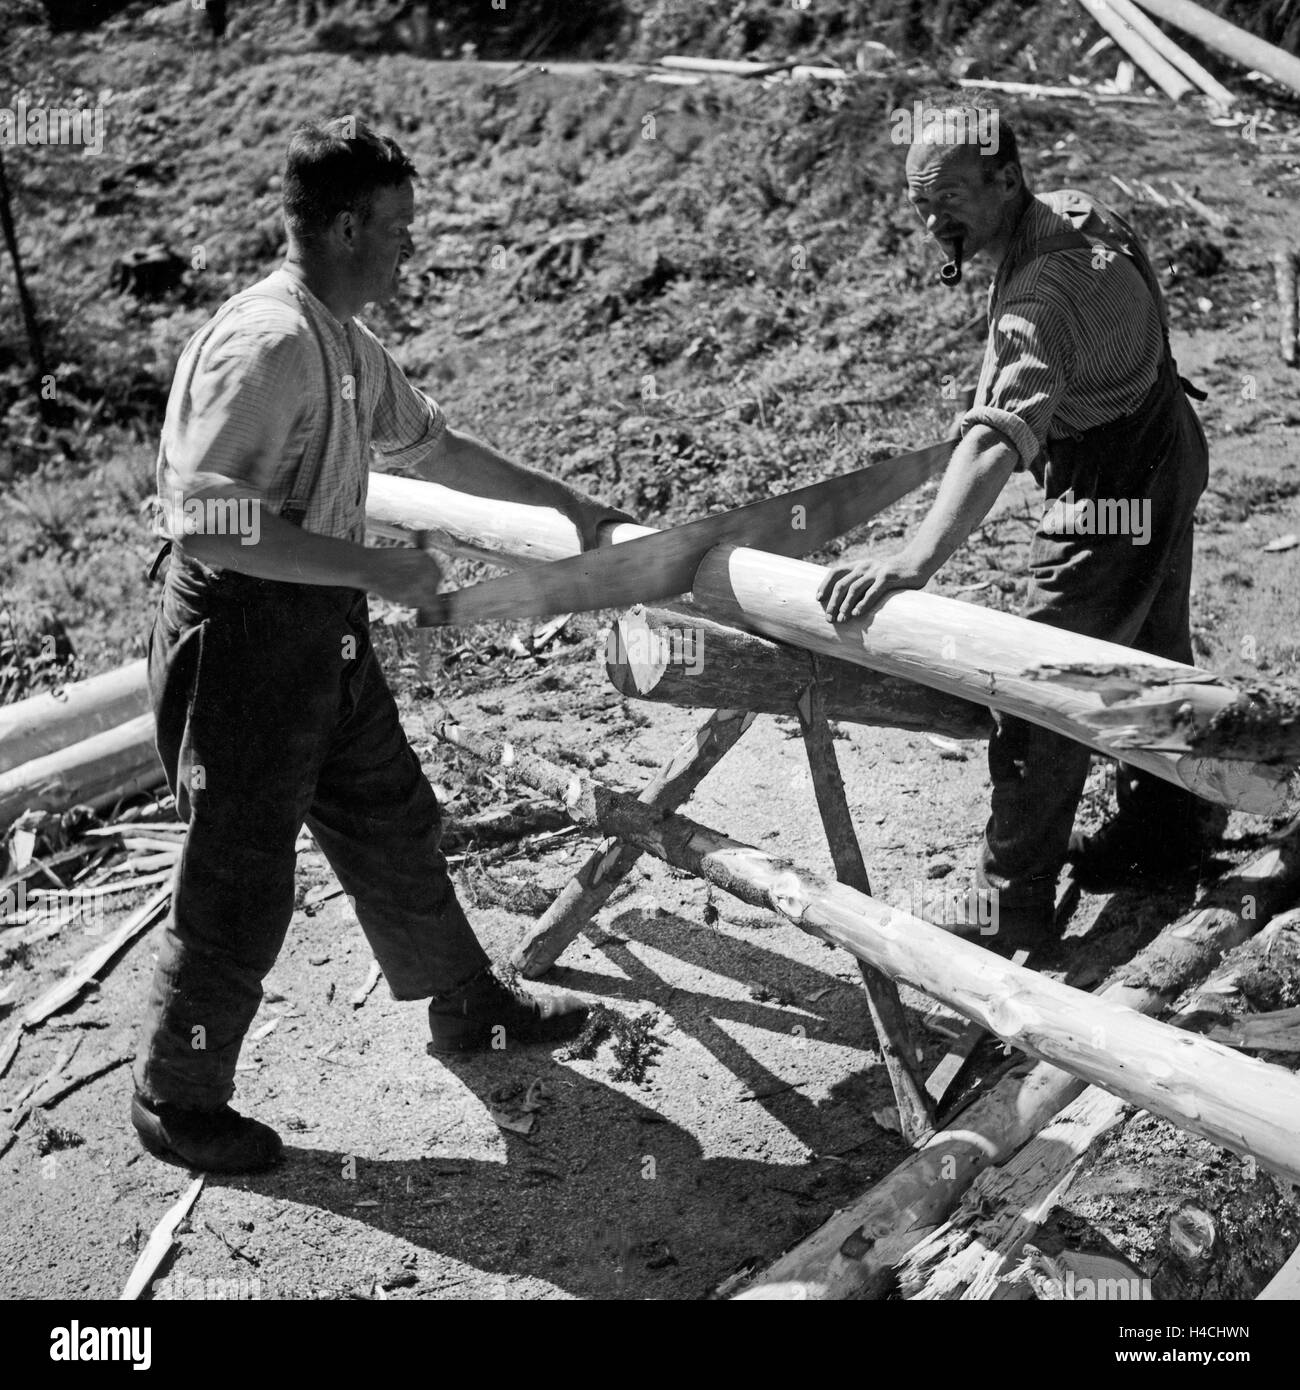 Holzfäller bei ihrer Arbeit an Baumstämmen im Schwarzwald, Deutschland 1930er Jahre. Woodcutters doing their job at wood trunks at Black Forest, Germany 1930s. Stock Photo